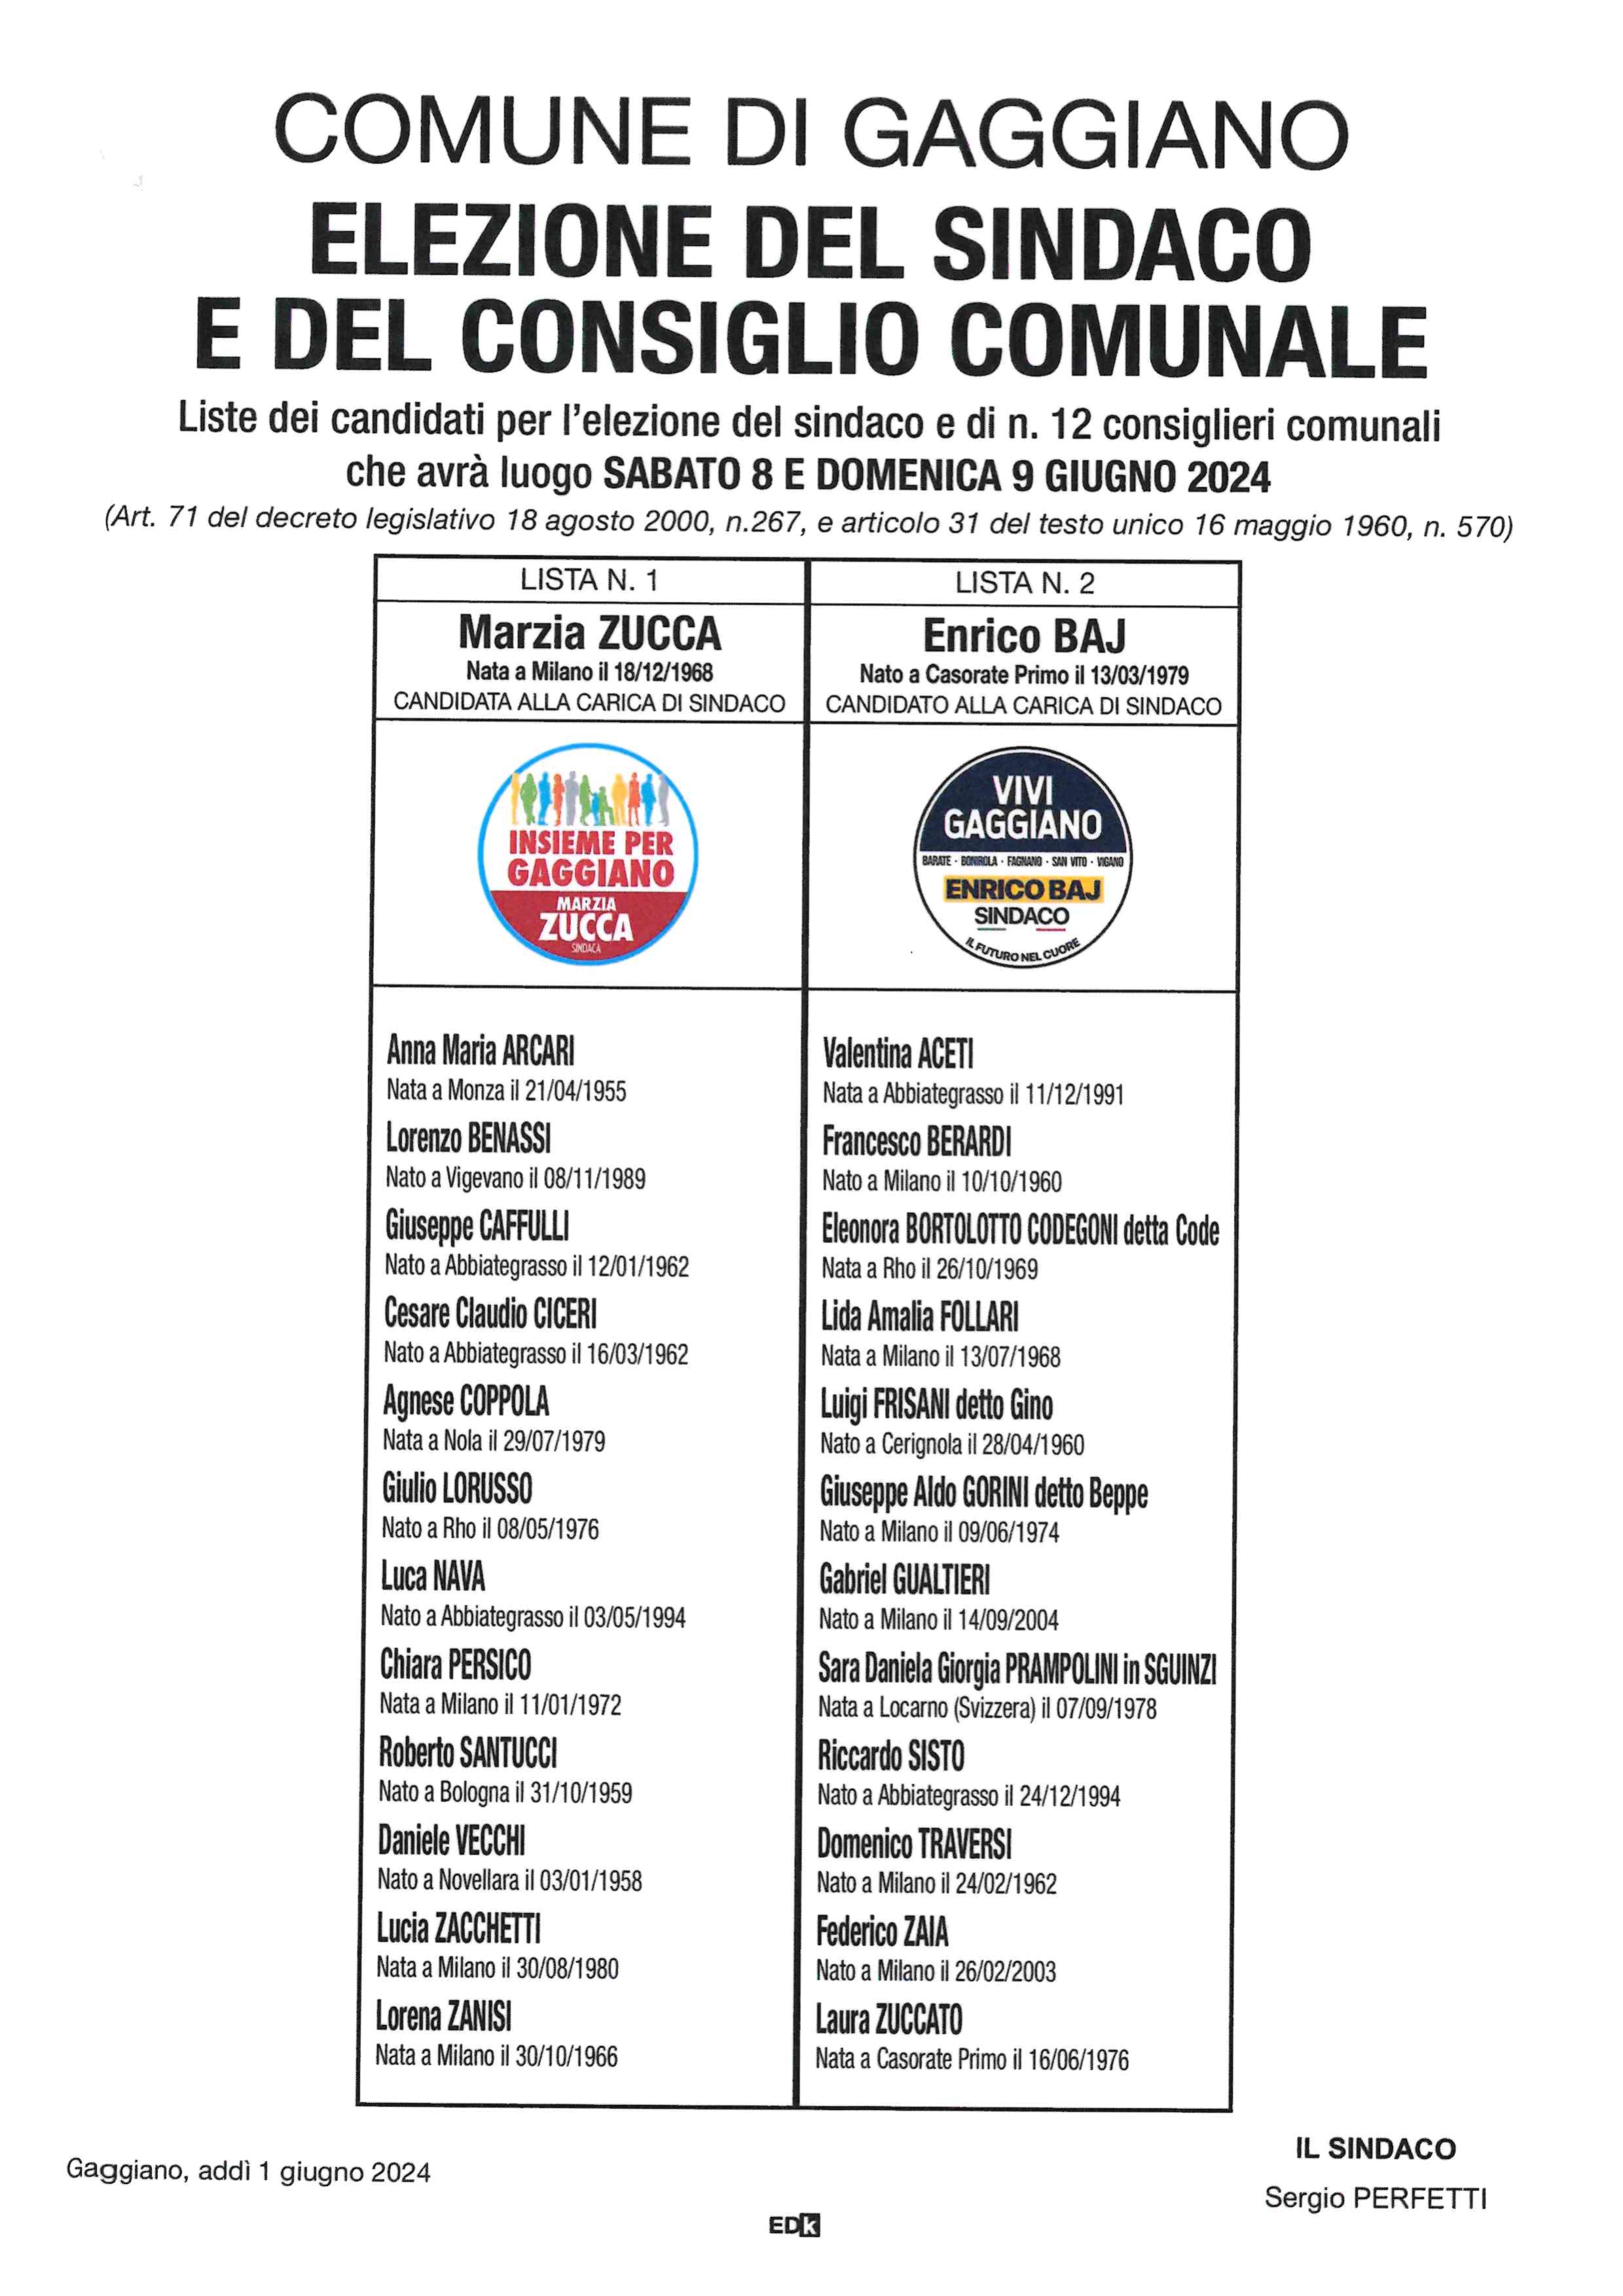 Elezione del Sindaco e del Consiglio Comunale - 8 e 9 giugno 2024 - manifesto con lista dei candidati